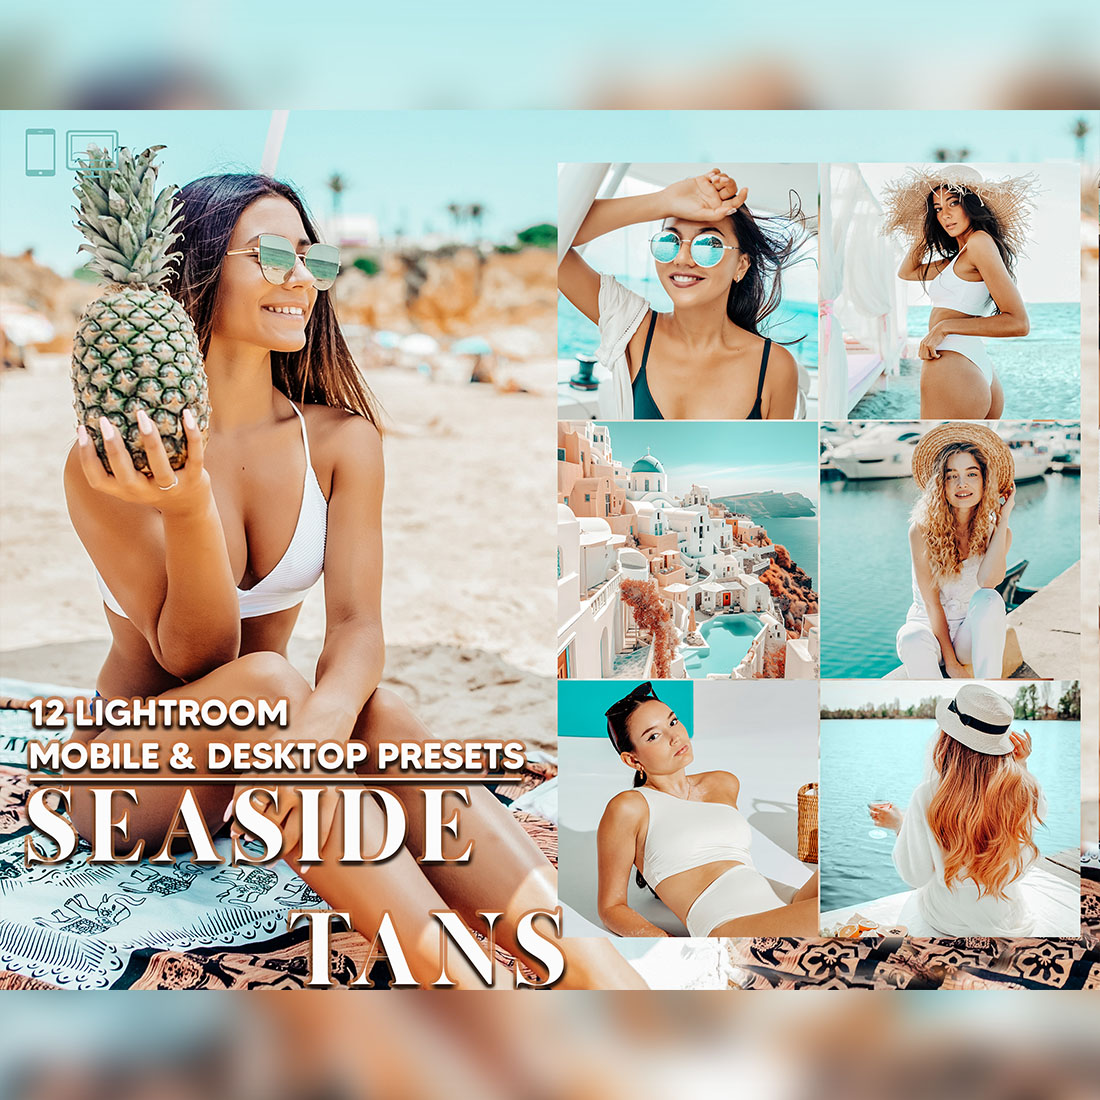 12 Seaside Tans Lightroom Presets, Bright Summer Mobile Preset, Sunkissed Desktop LR Filter Lifestyle Theme For Blogger Portrait Instagram cover image.